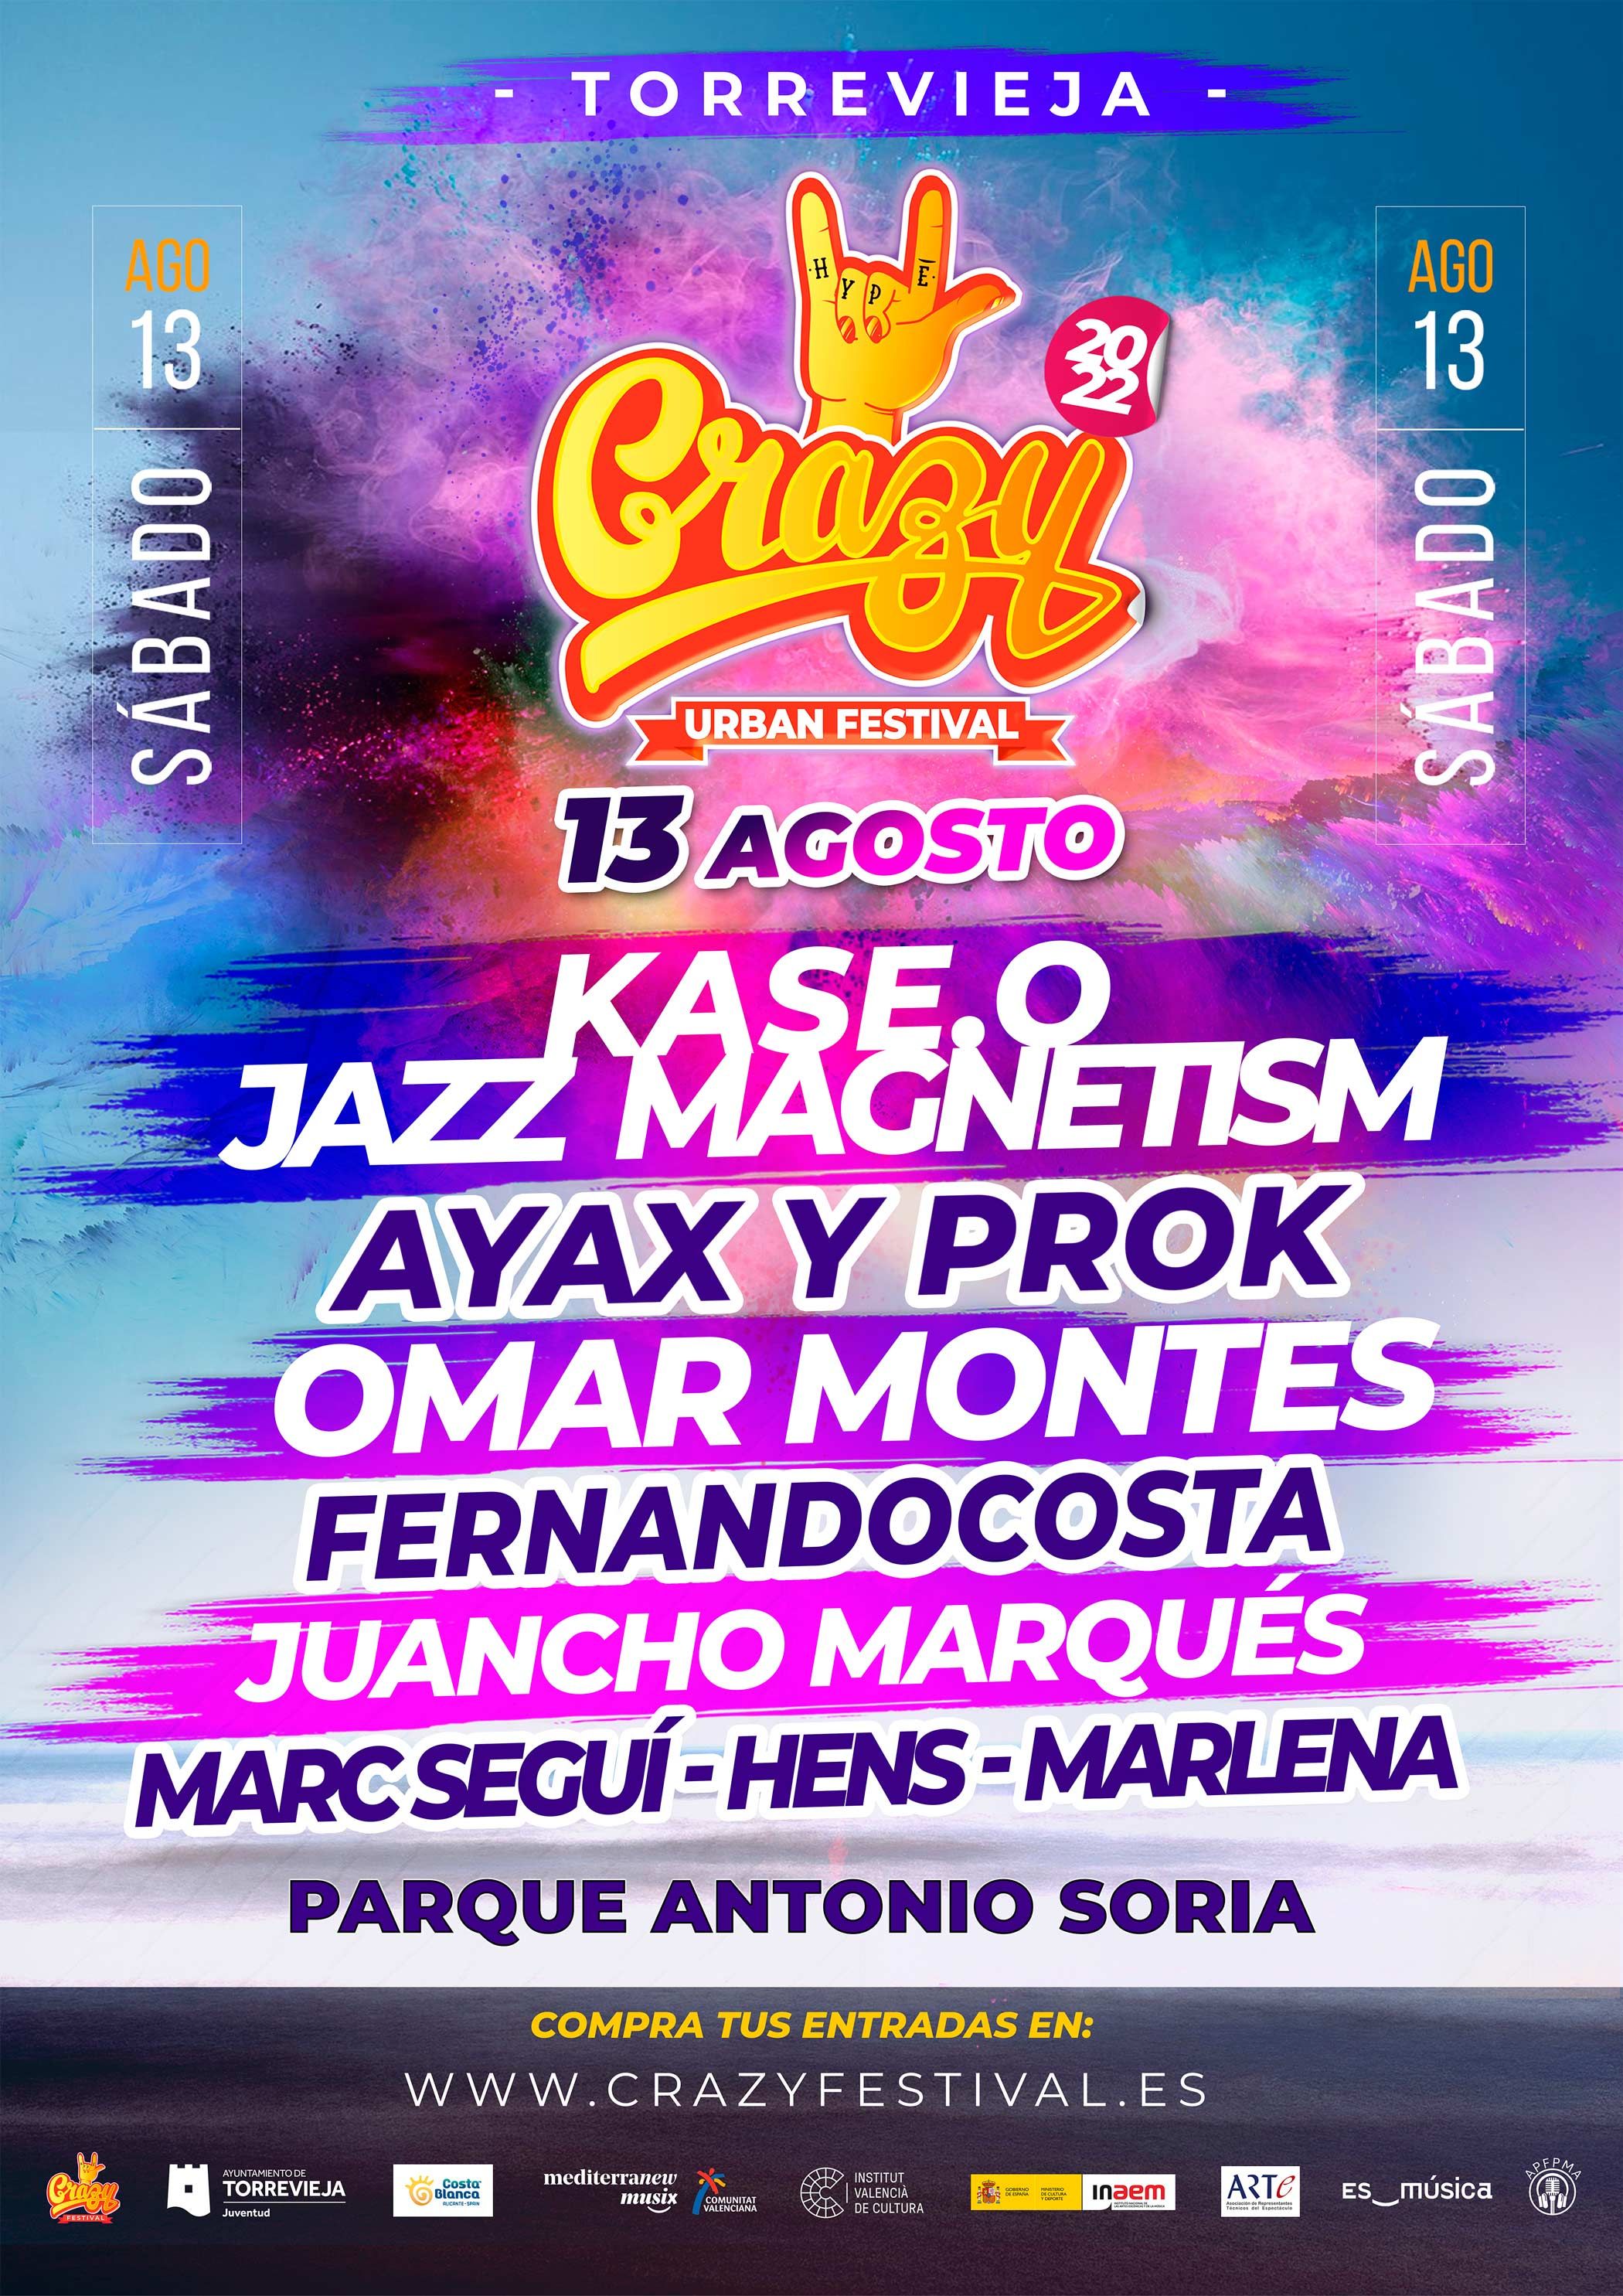 Crazy Urban Festival congregará, el próximo sábado 13 de agosto en el Parque Antonio Soria de Torrevieja, a miles de seguidores de la música urbana